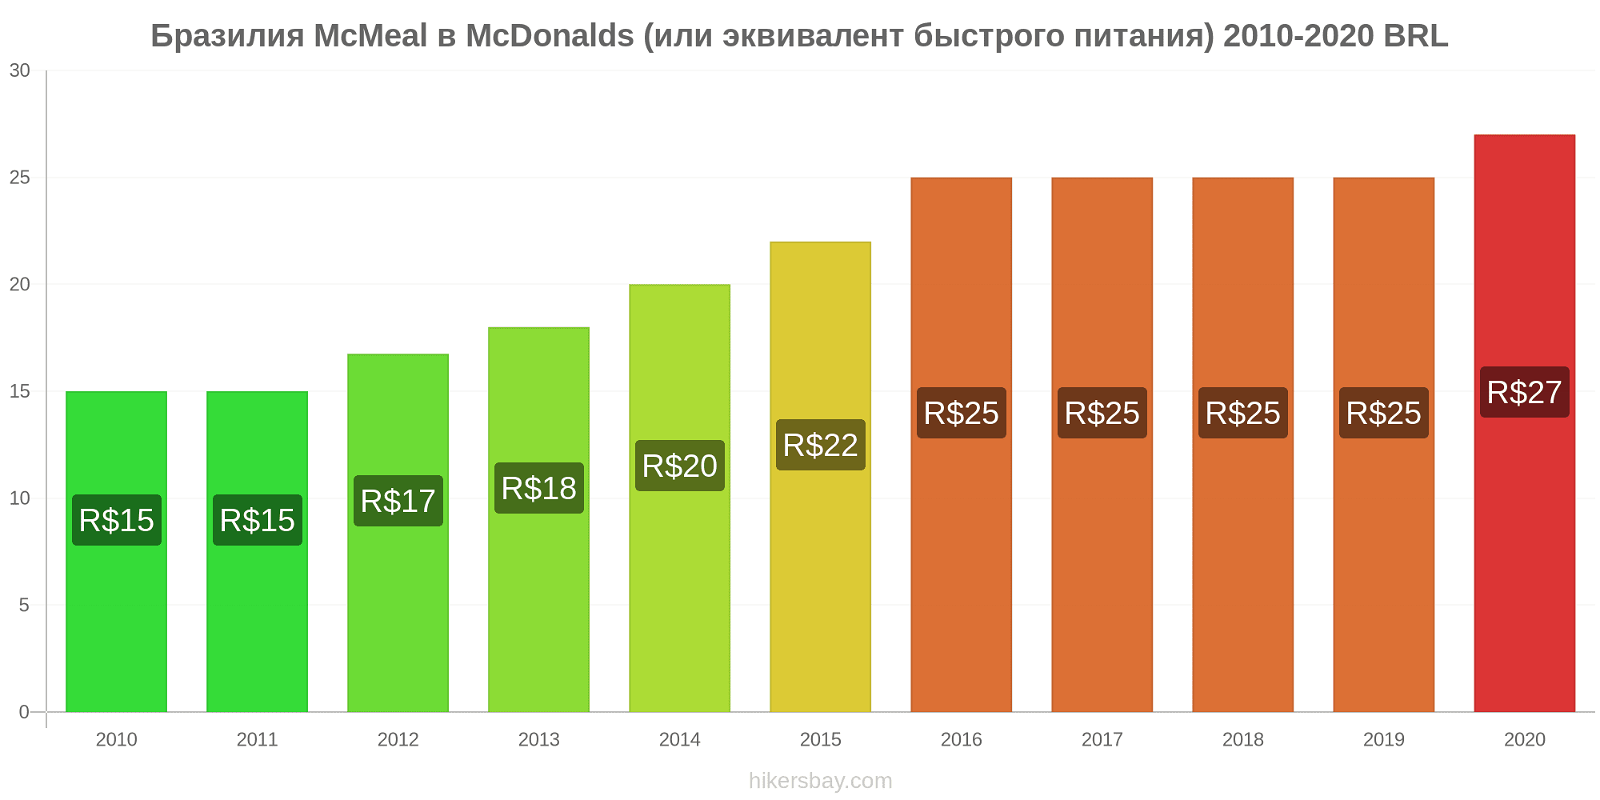 Бразилия изменения цен McMeal в McDonalds (или эквивалент быстрого питания) hikersbay.com